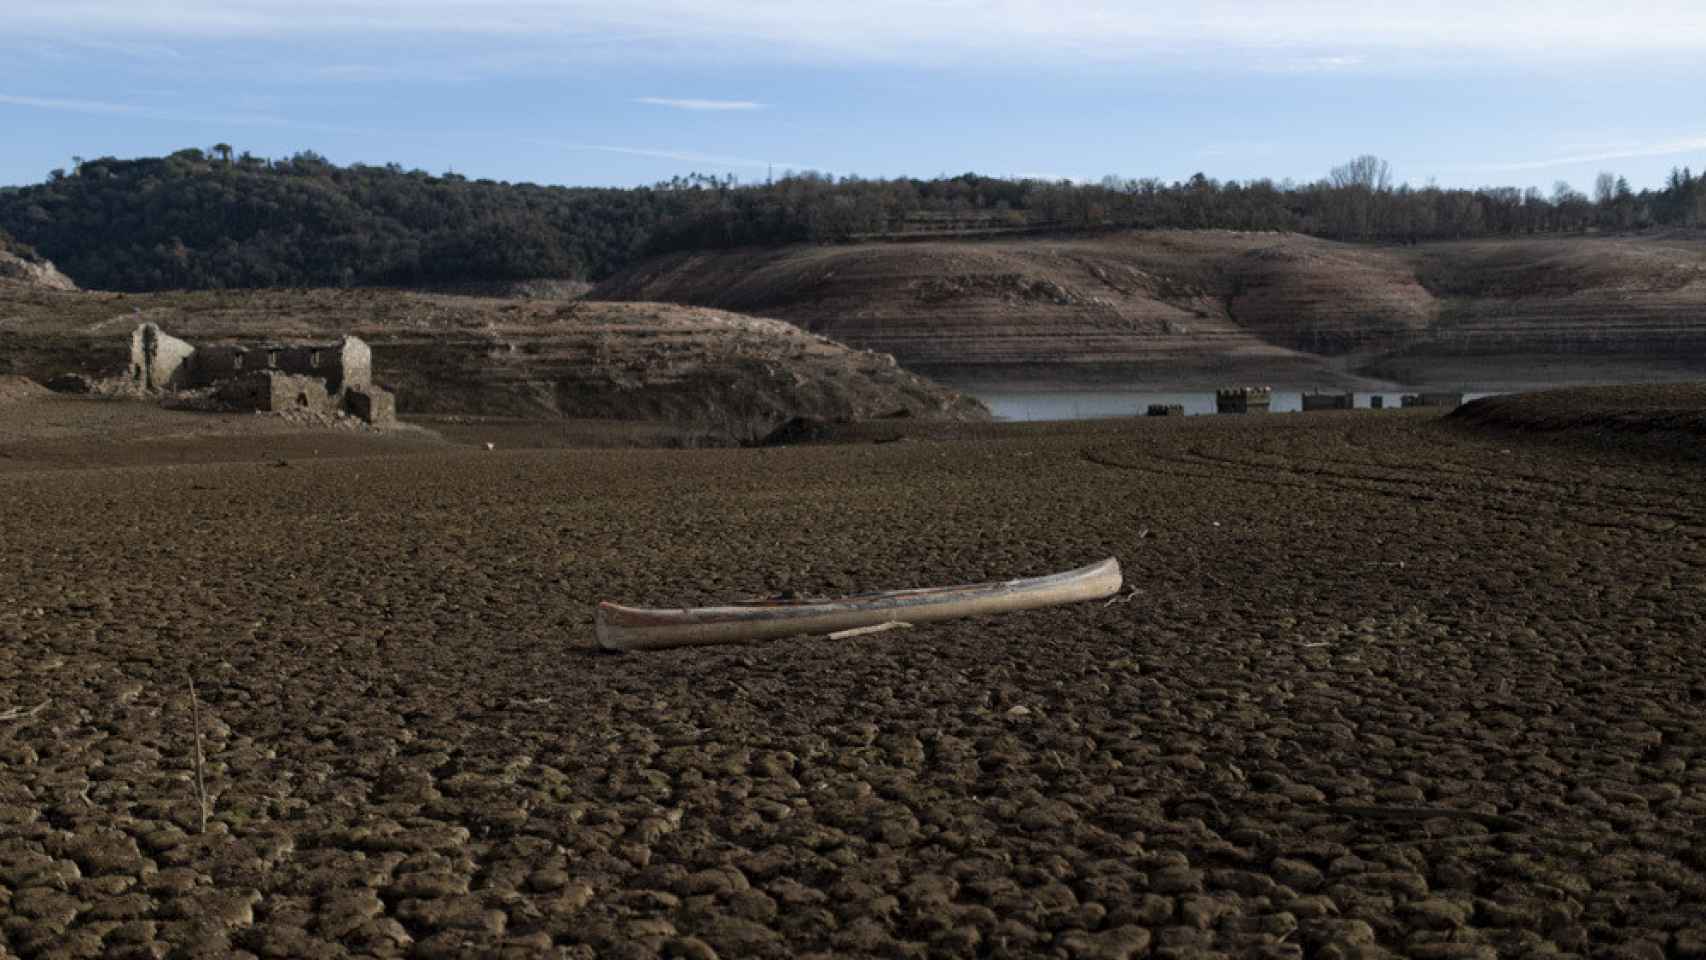 El pantano de Sau, casi vacío por la sequía